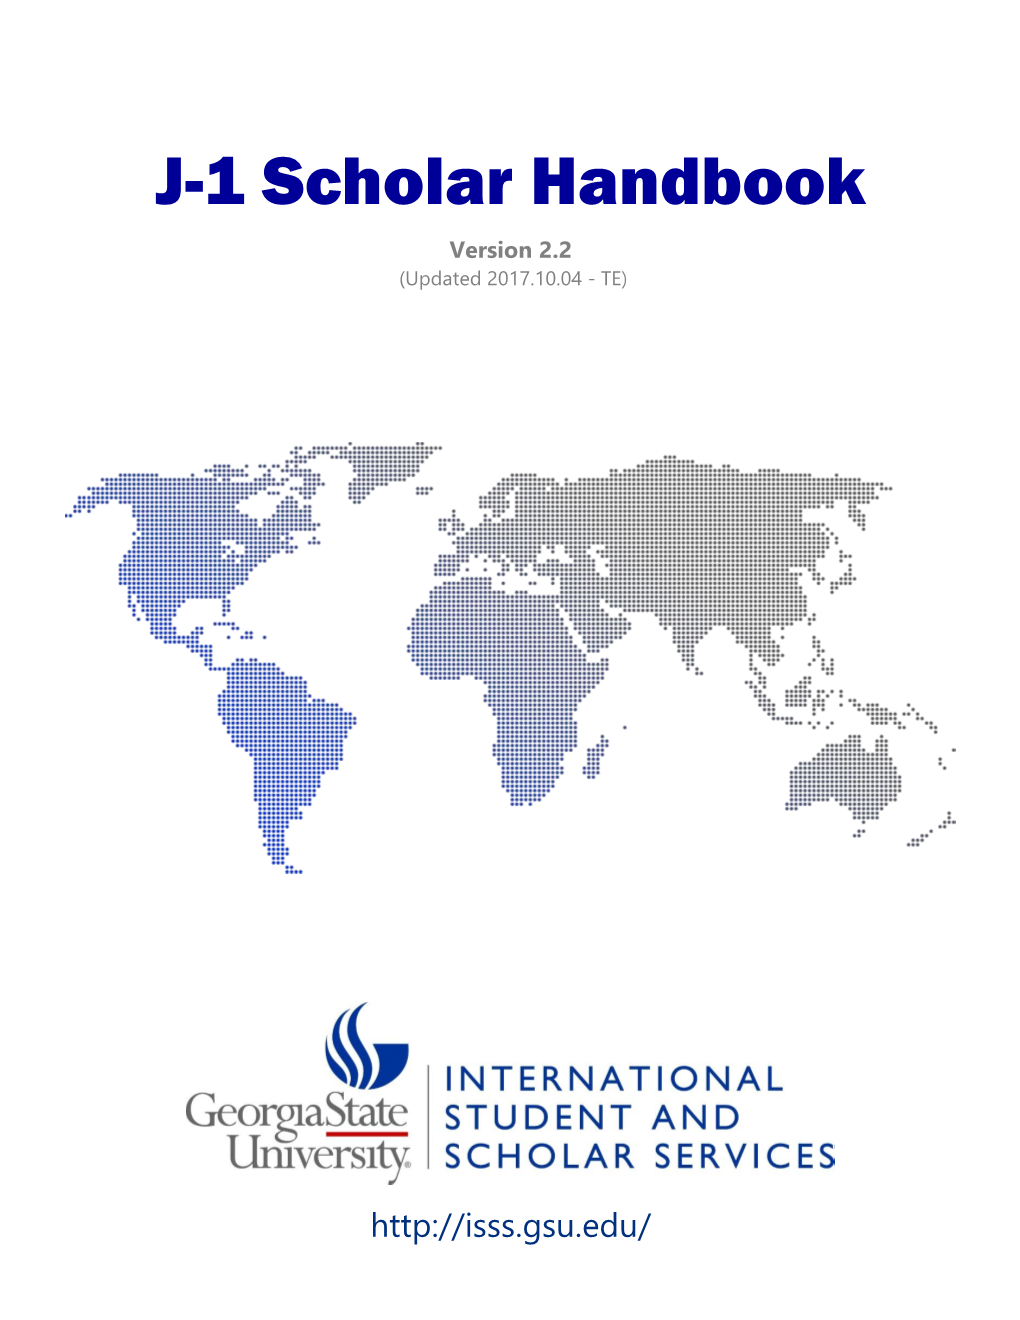 J-1 Scholar Handbook Version 2.2 (Updated 2017.10.04 - TE)